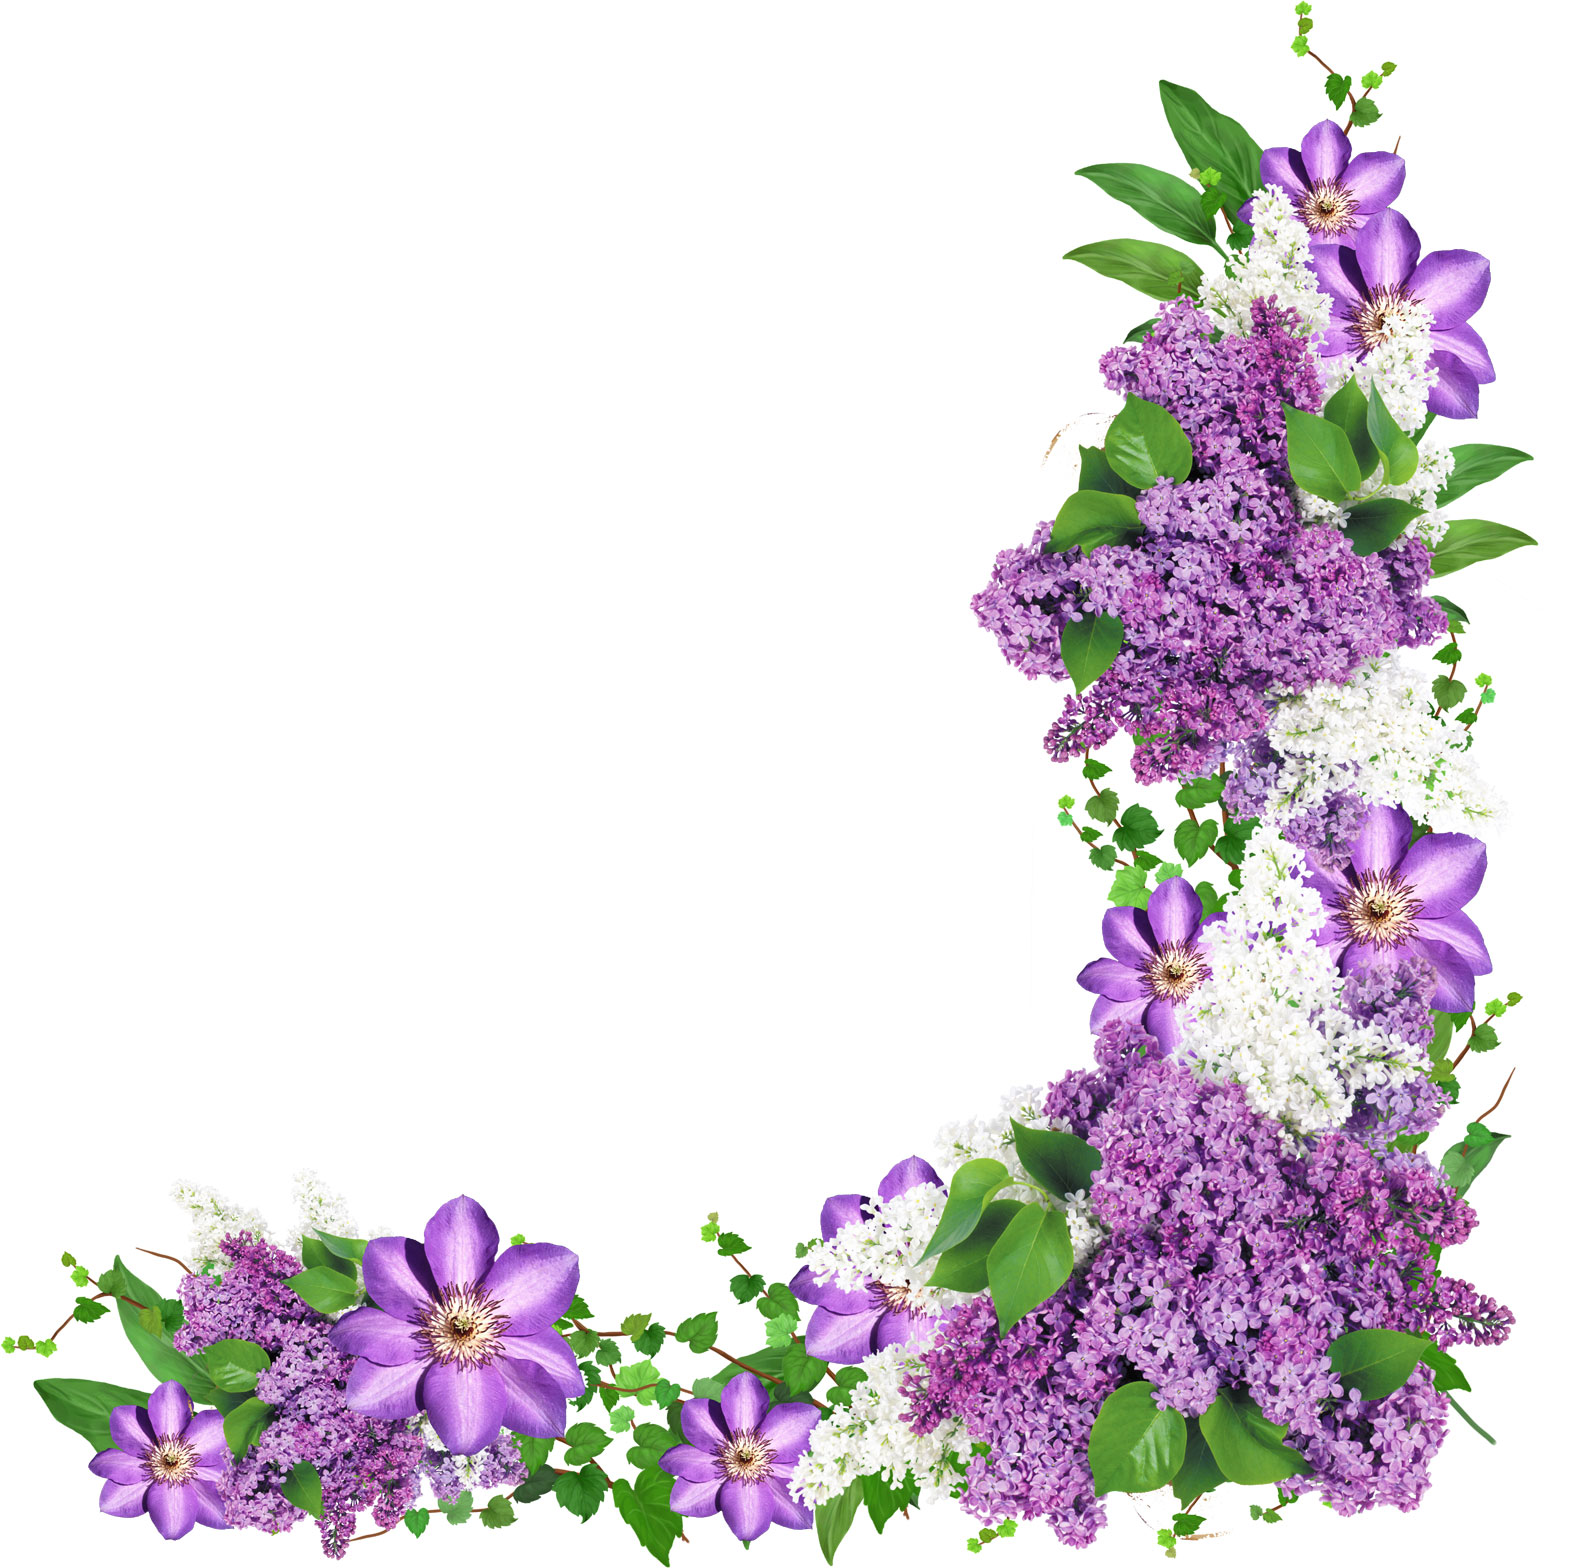 紫色の花の写真 フリー素材 No 666 紫と白の花